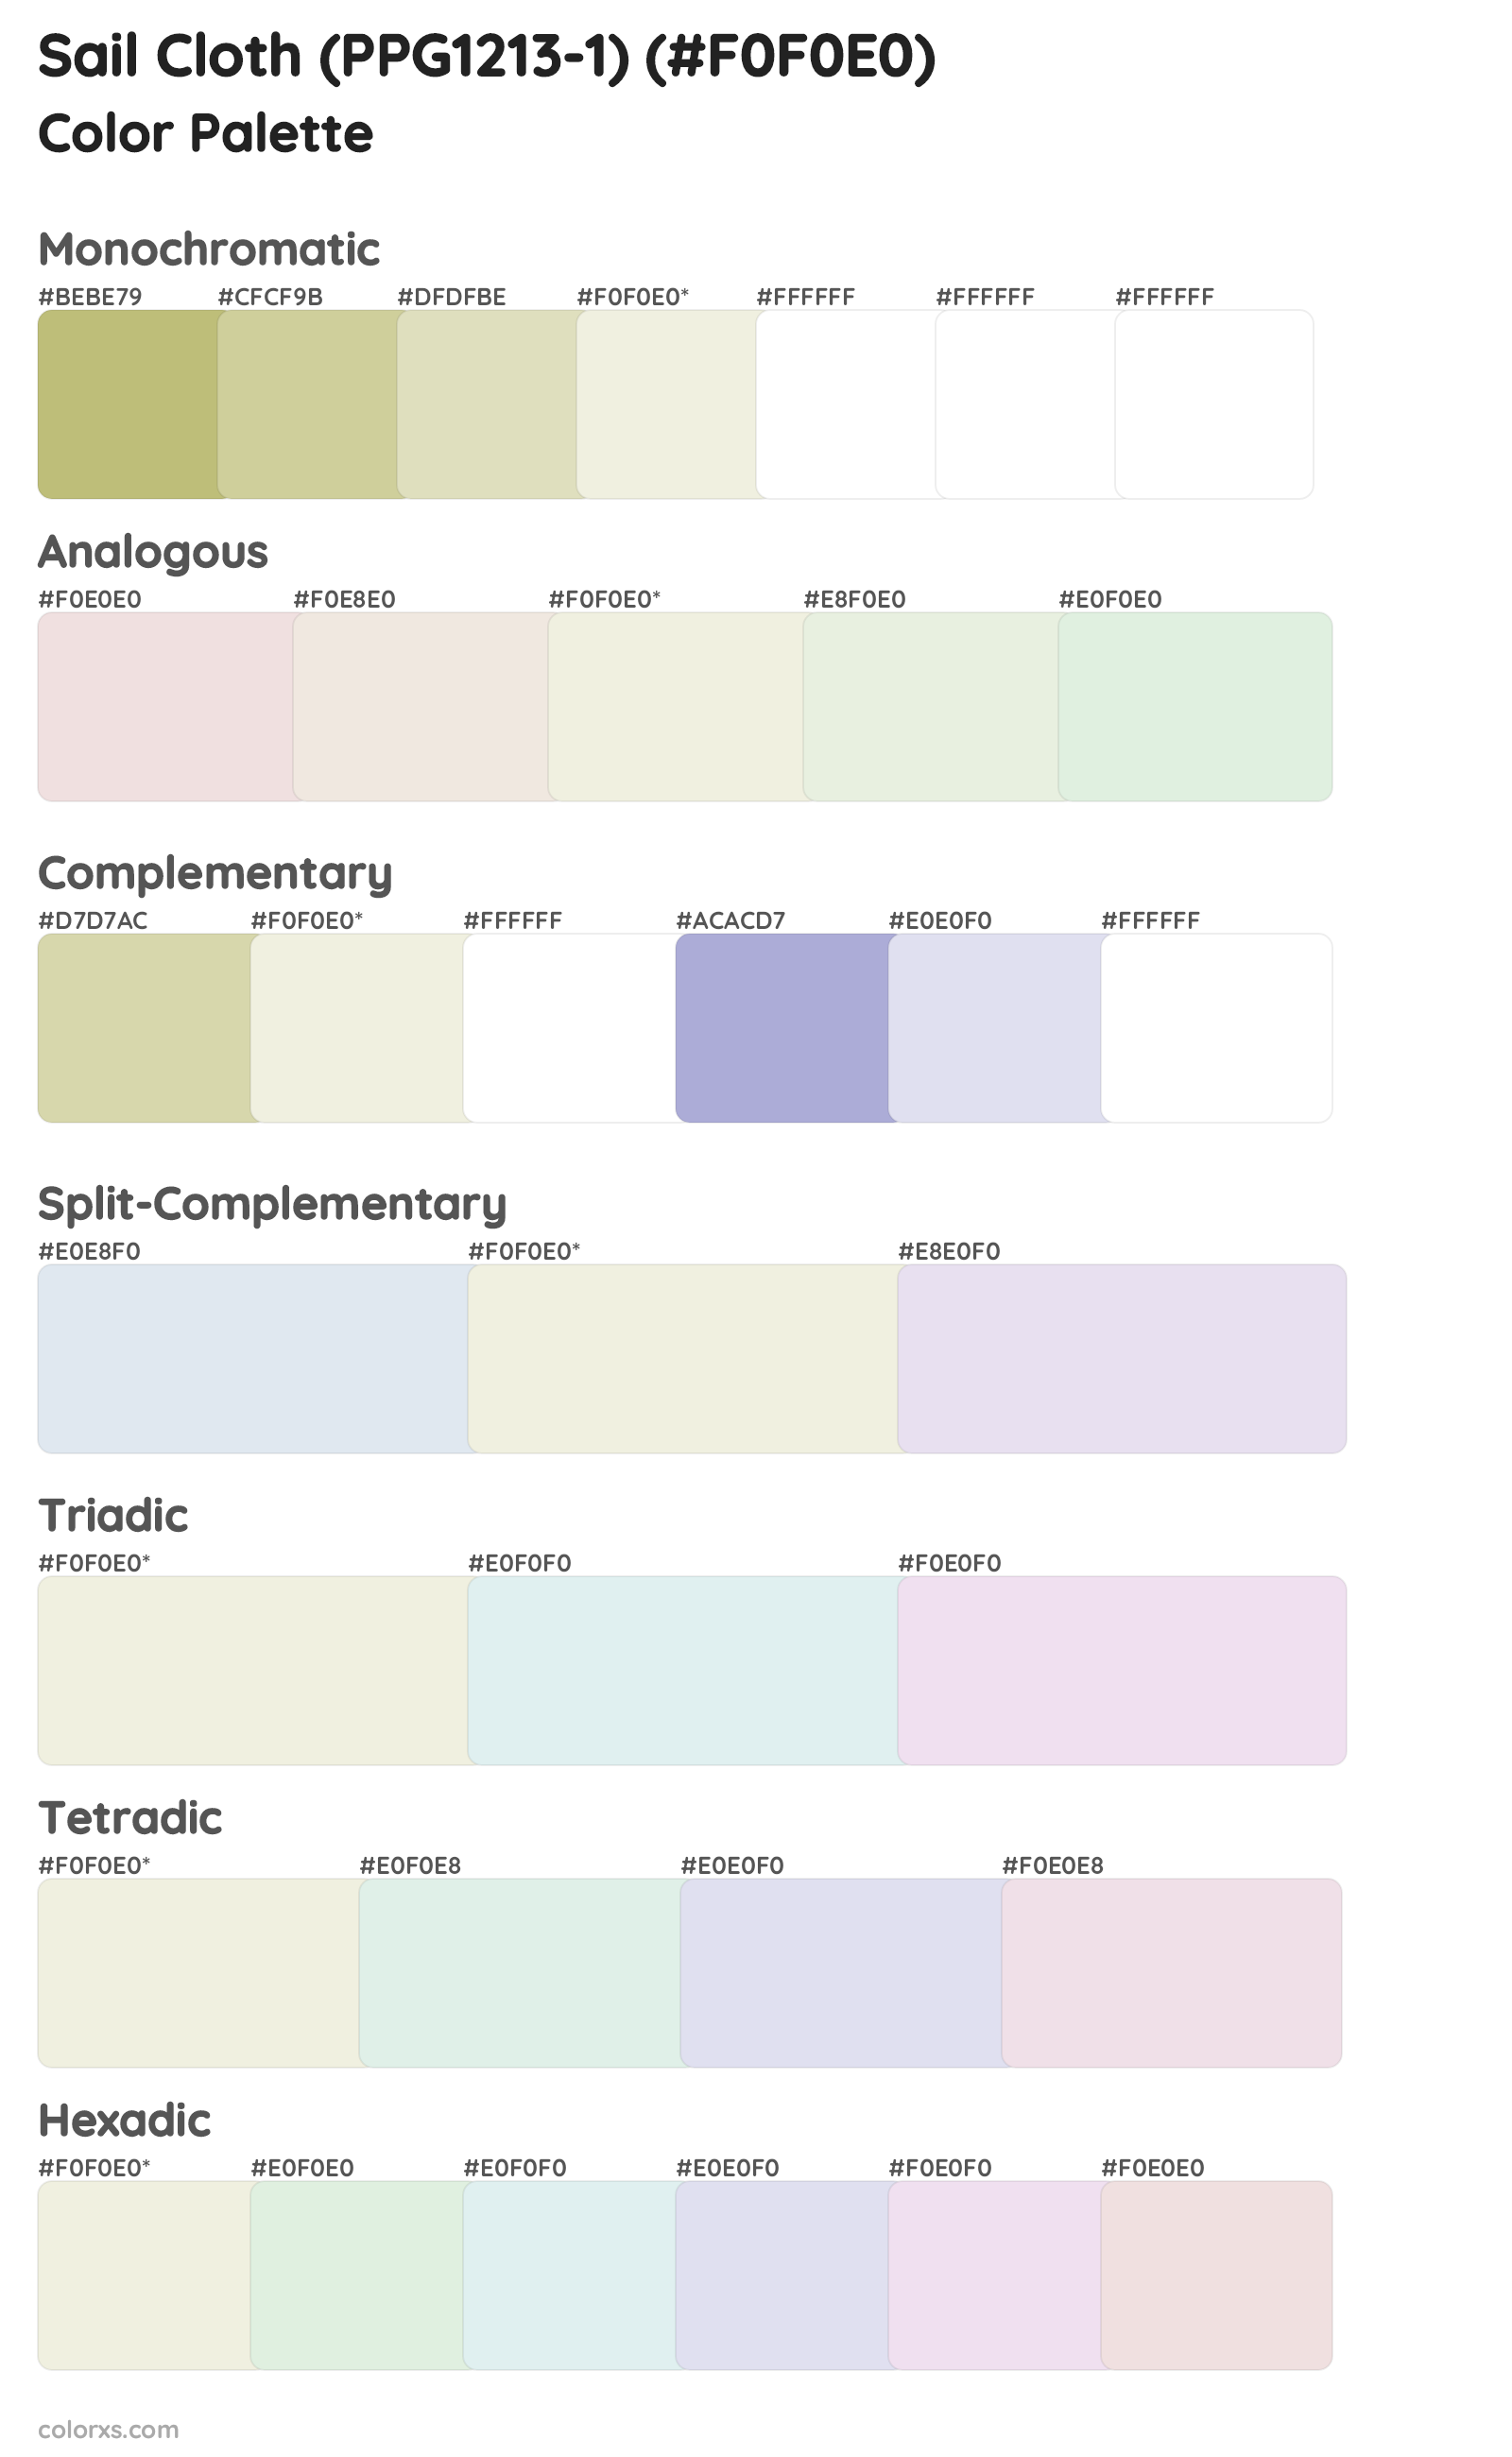 Sail Cloth (PPG1213-1) Color Scheme Palettes